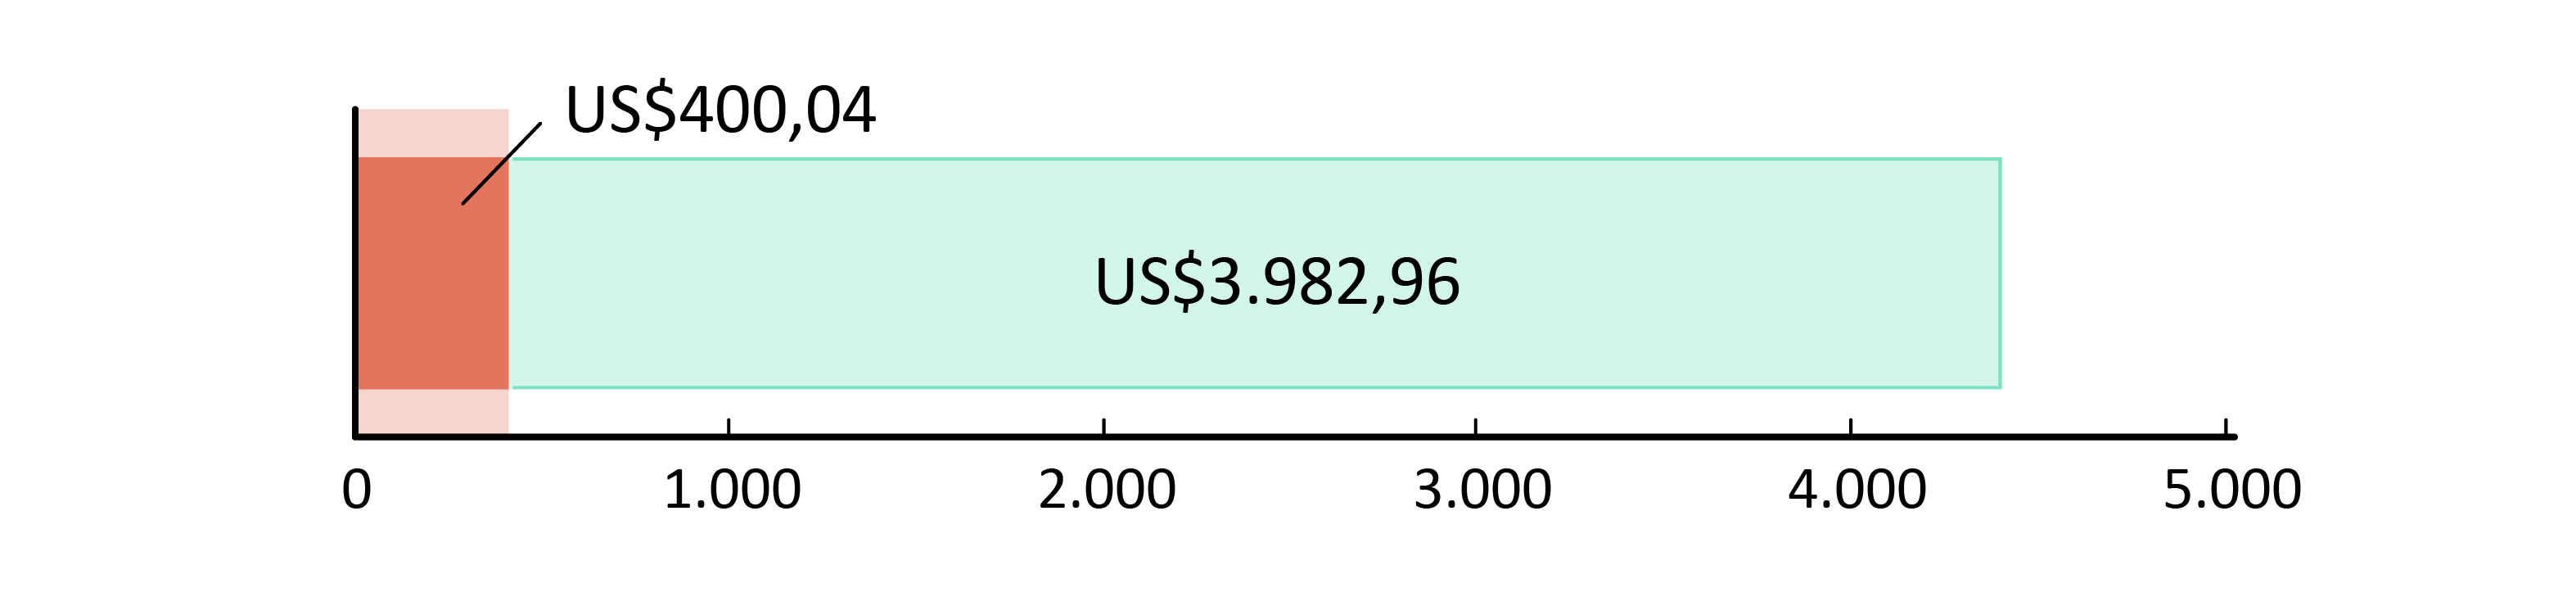 US$400,04 fueron usados; US$3.982,96 restan